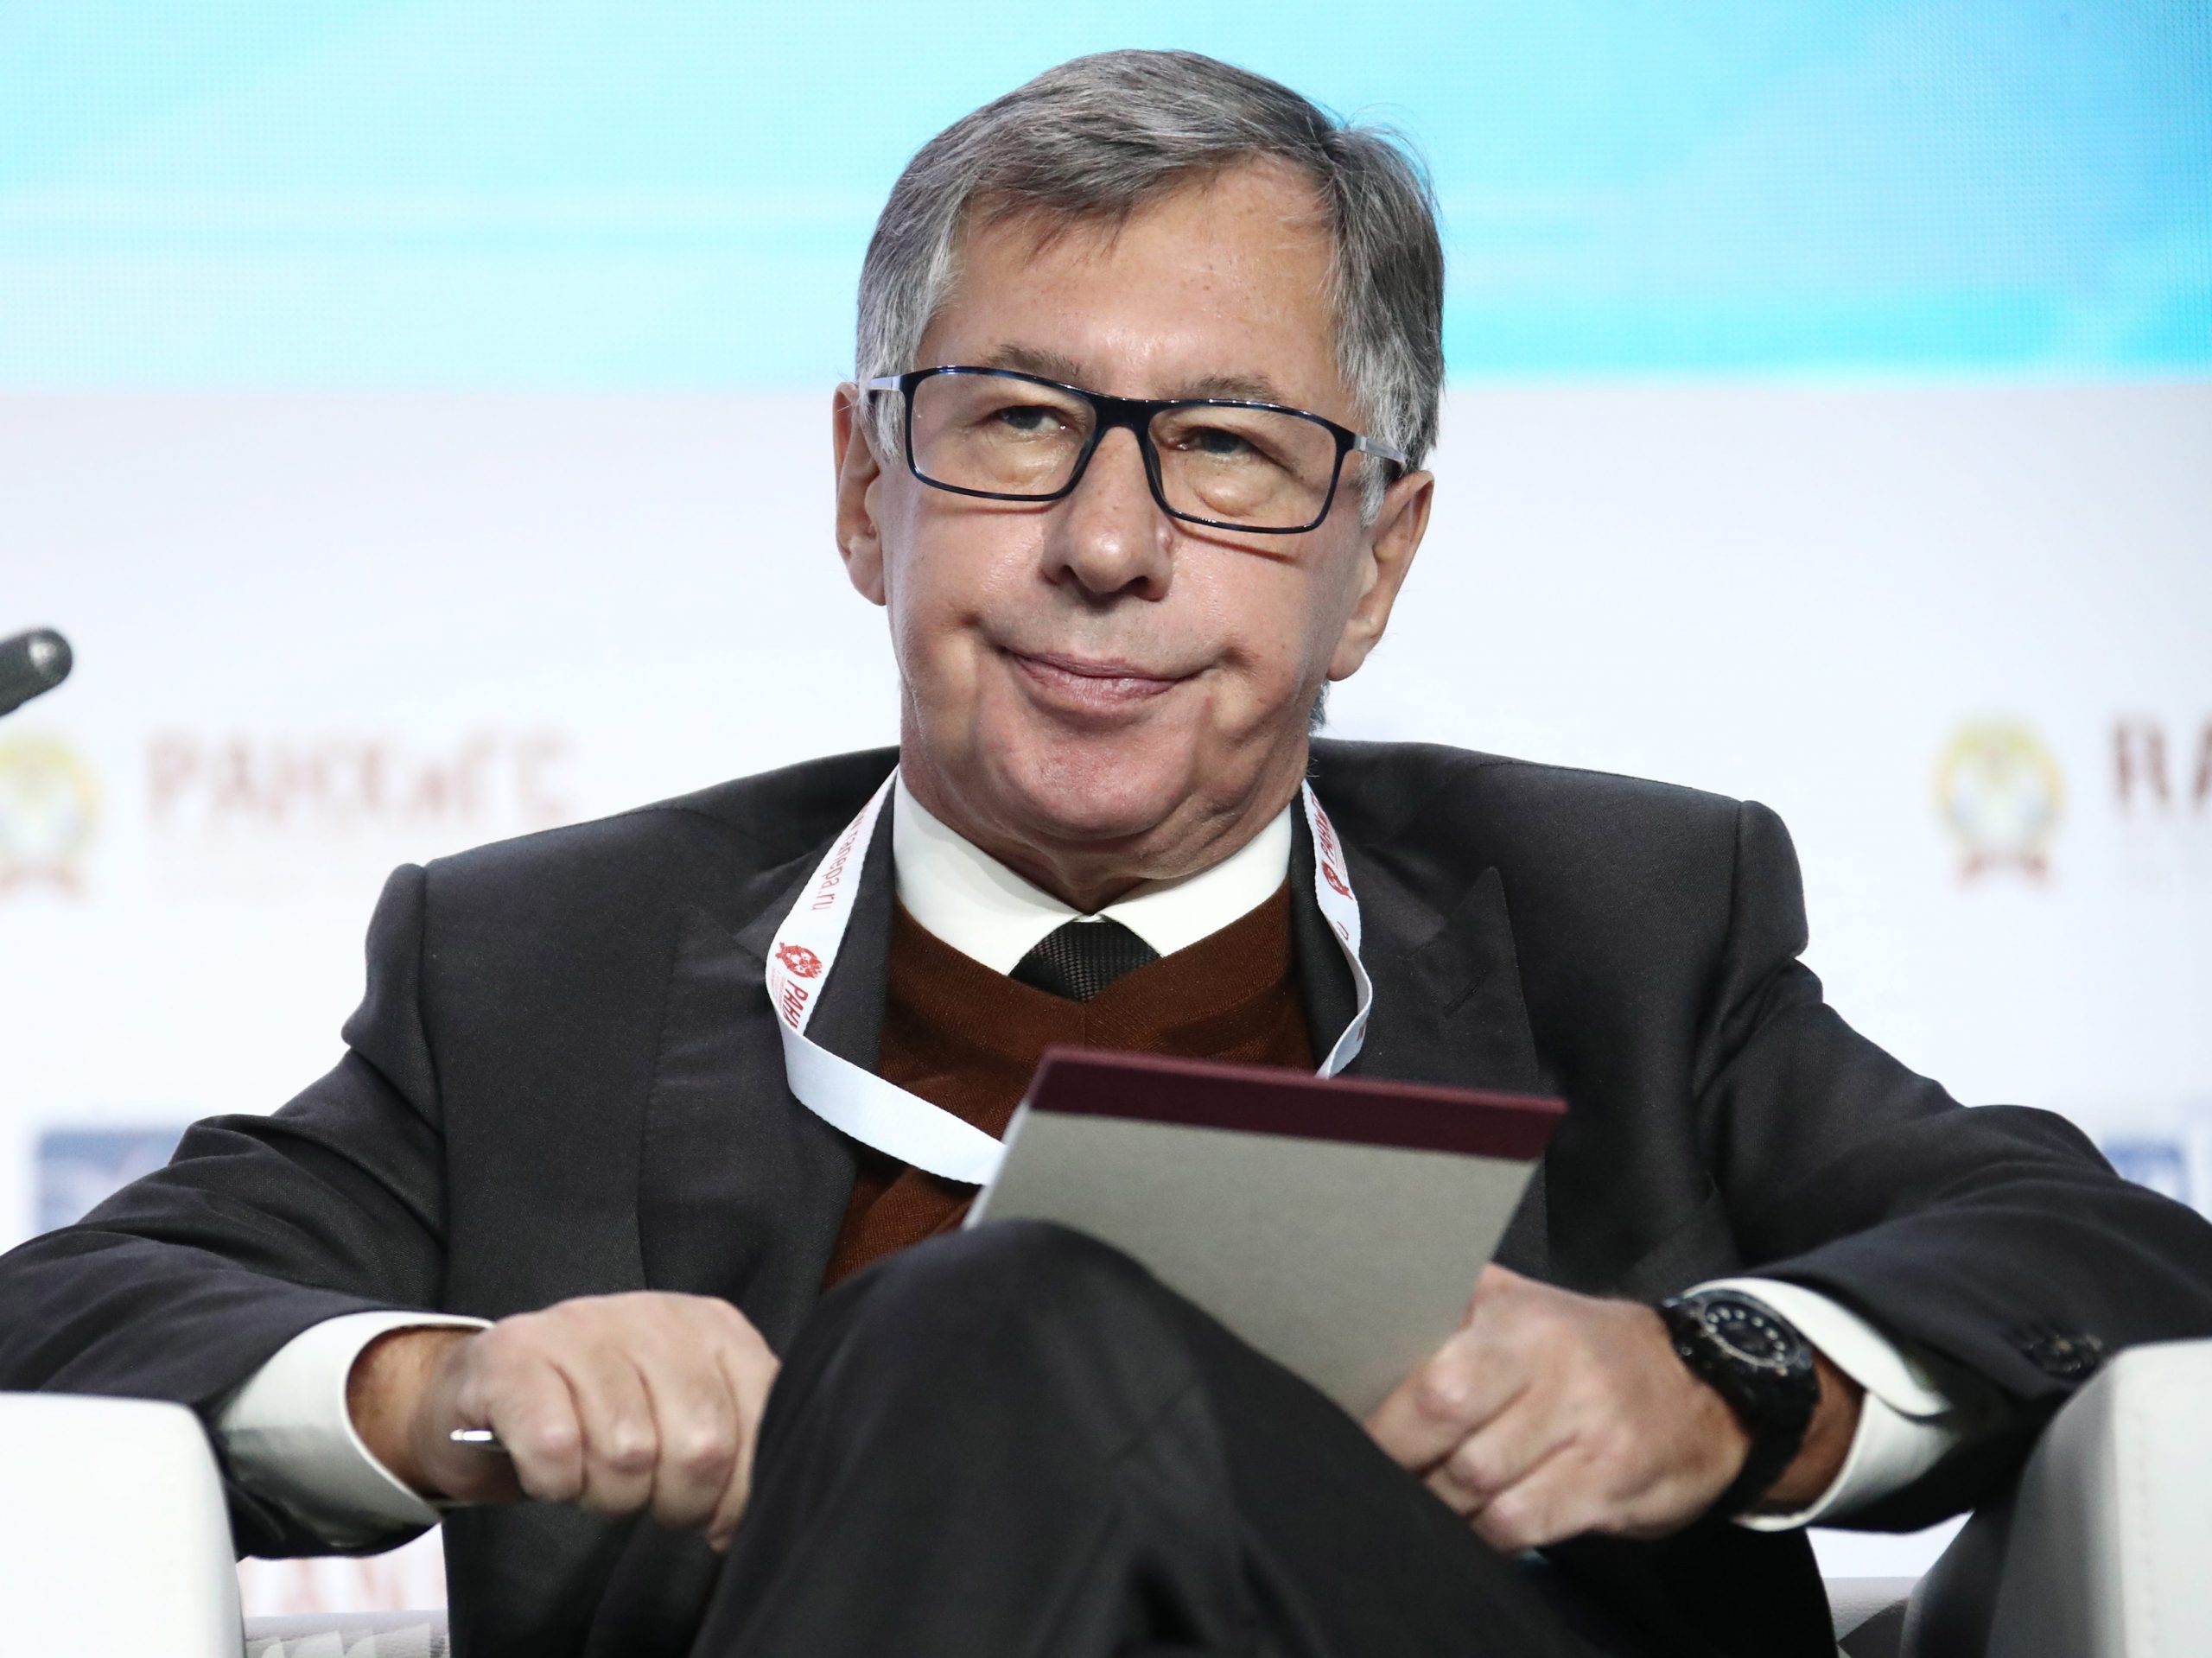 Voorzitter van de raad van bestuur van Alfa Bank Petr Aven bij de Russische presidentiële academie voor nationale economie en openbaar bestuur in 2020.